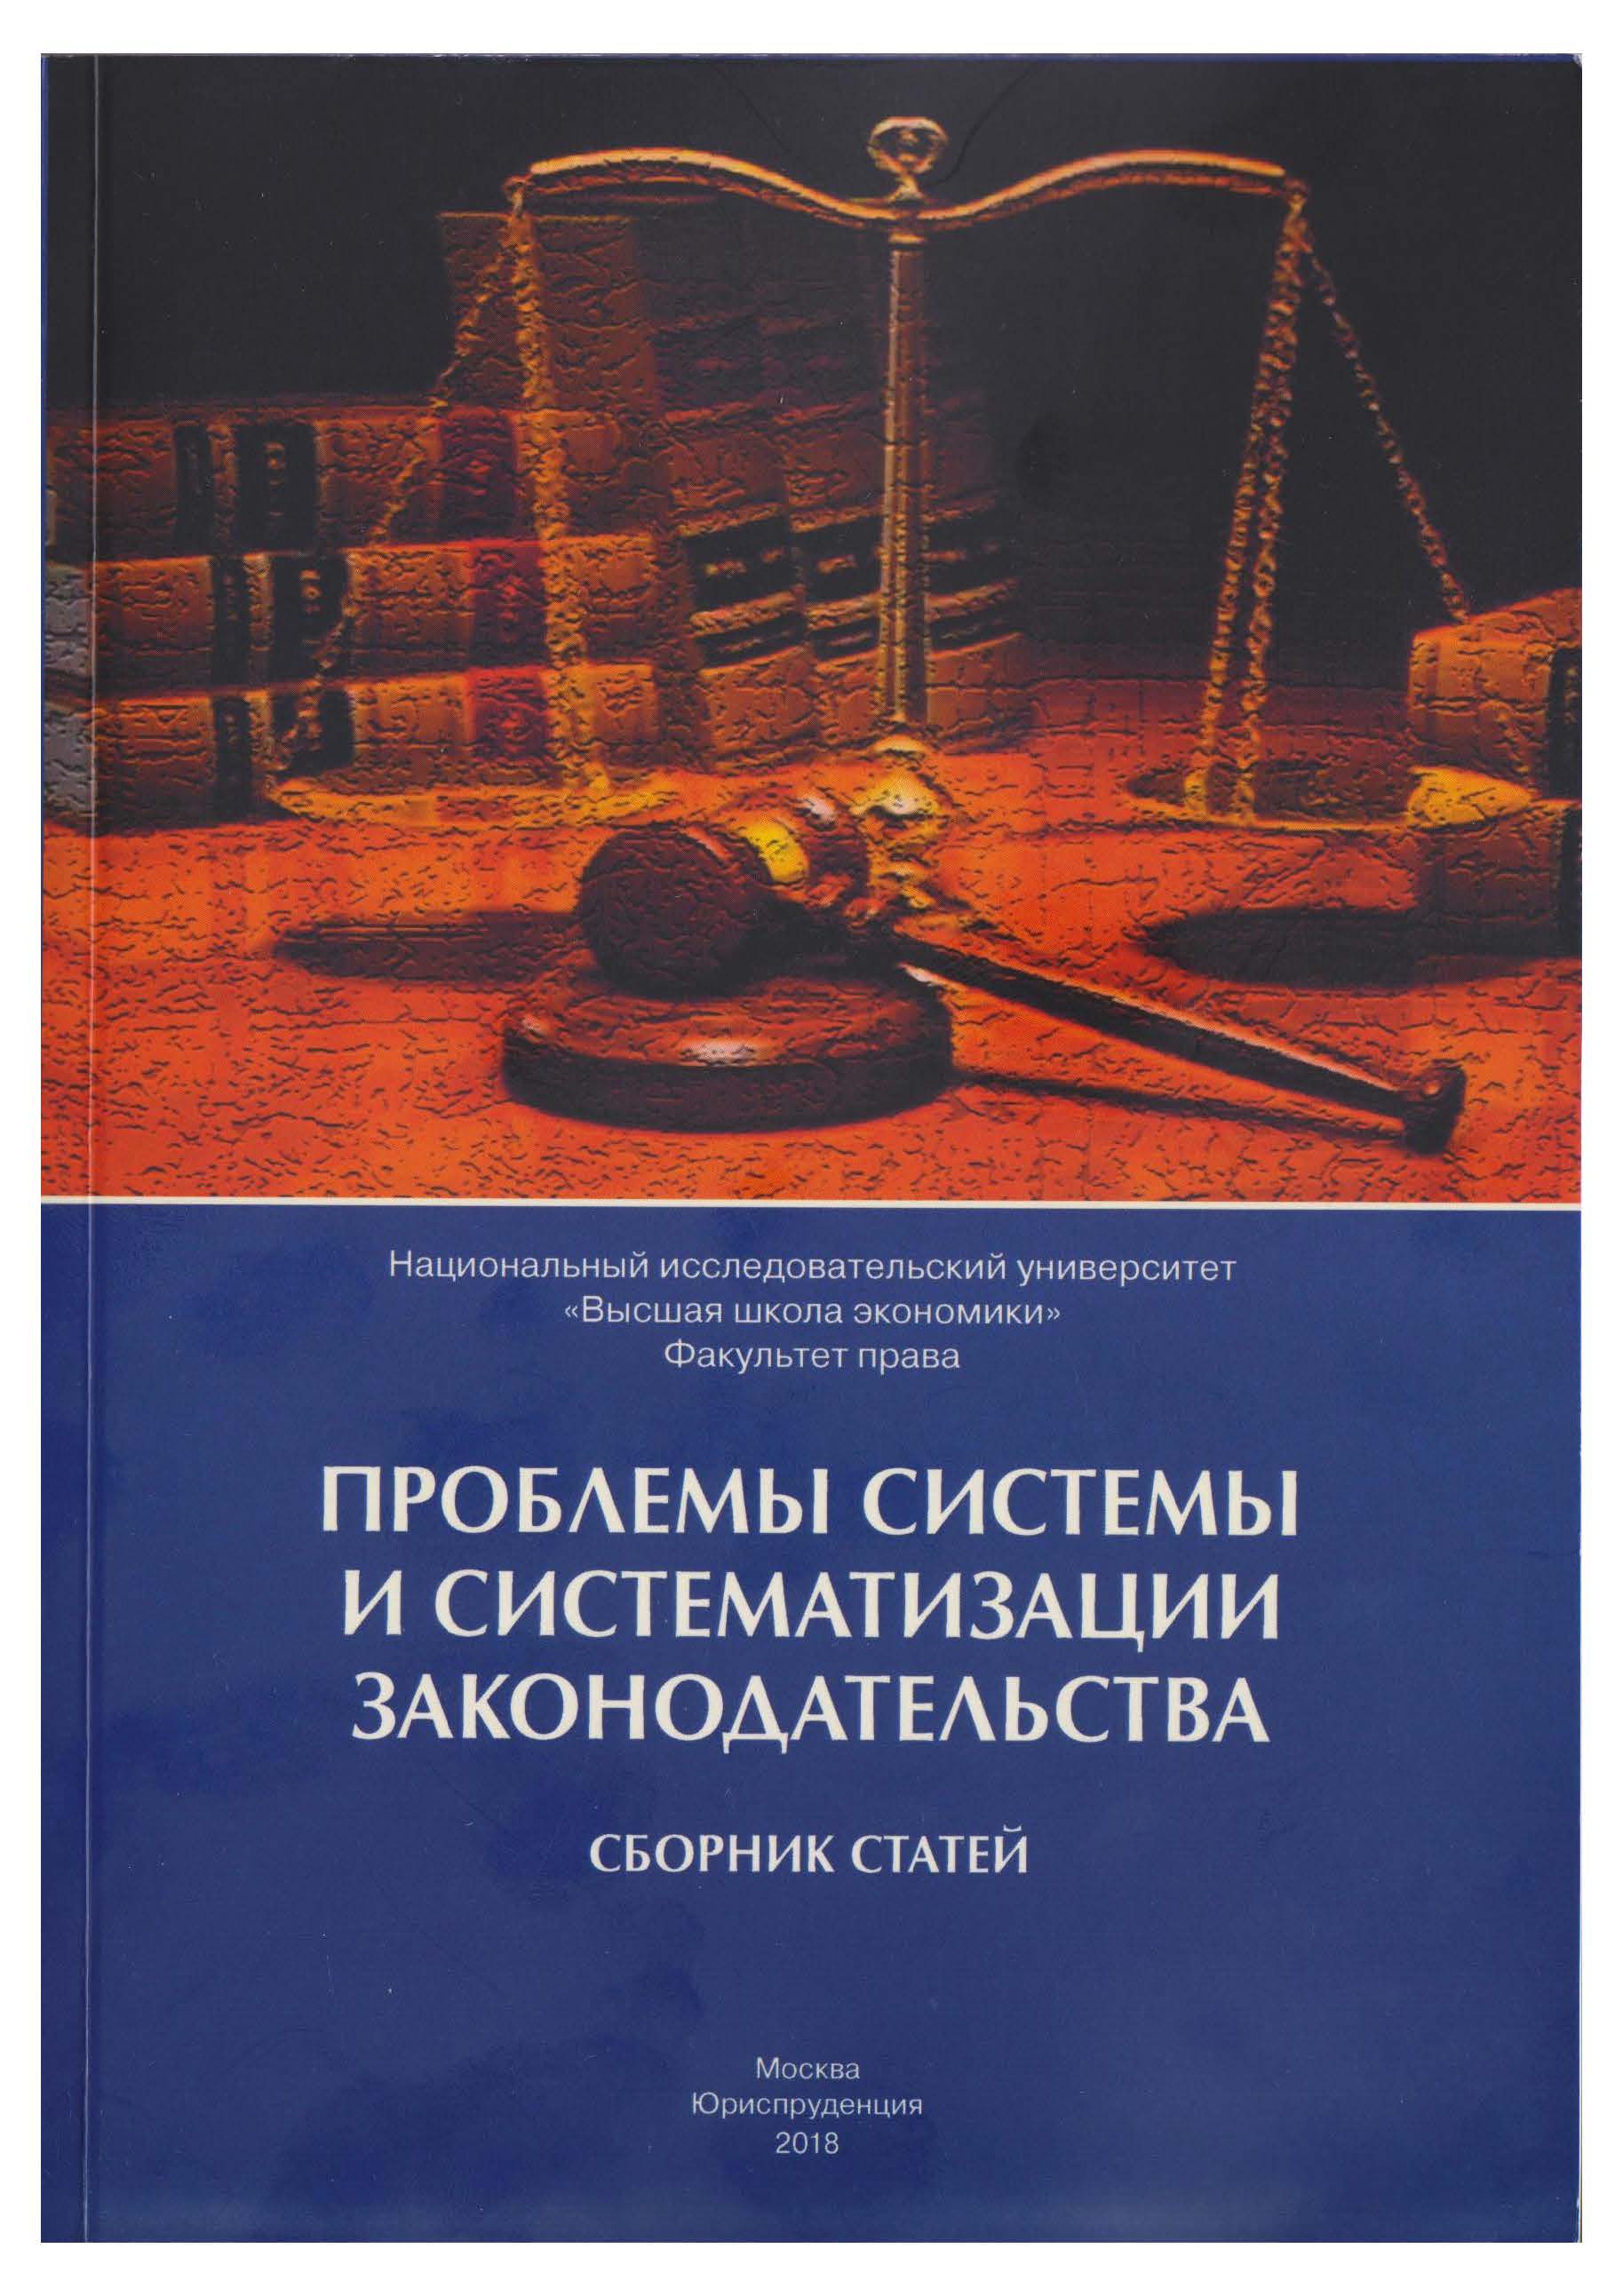 Проблемы системы и систематизации законодательства: сборник статей